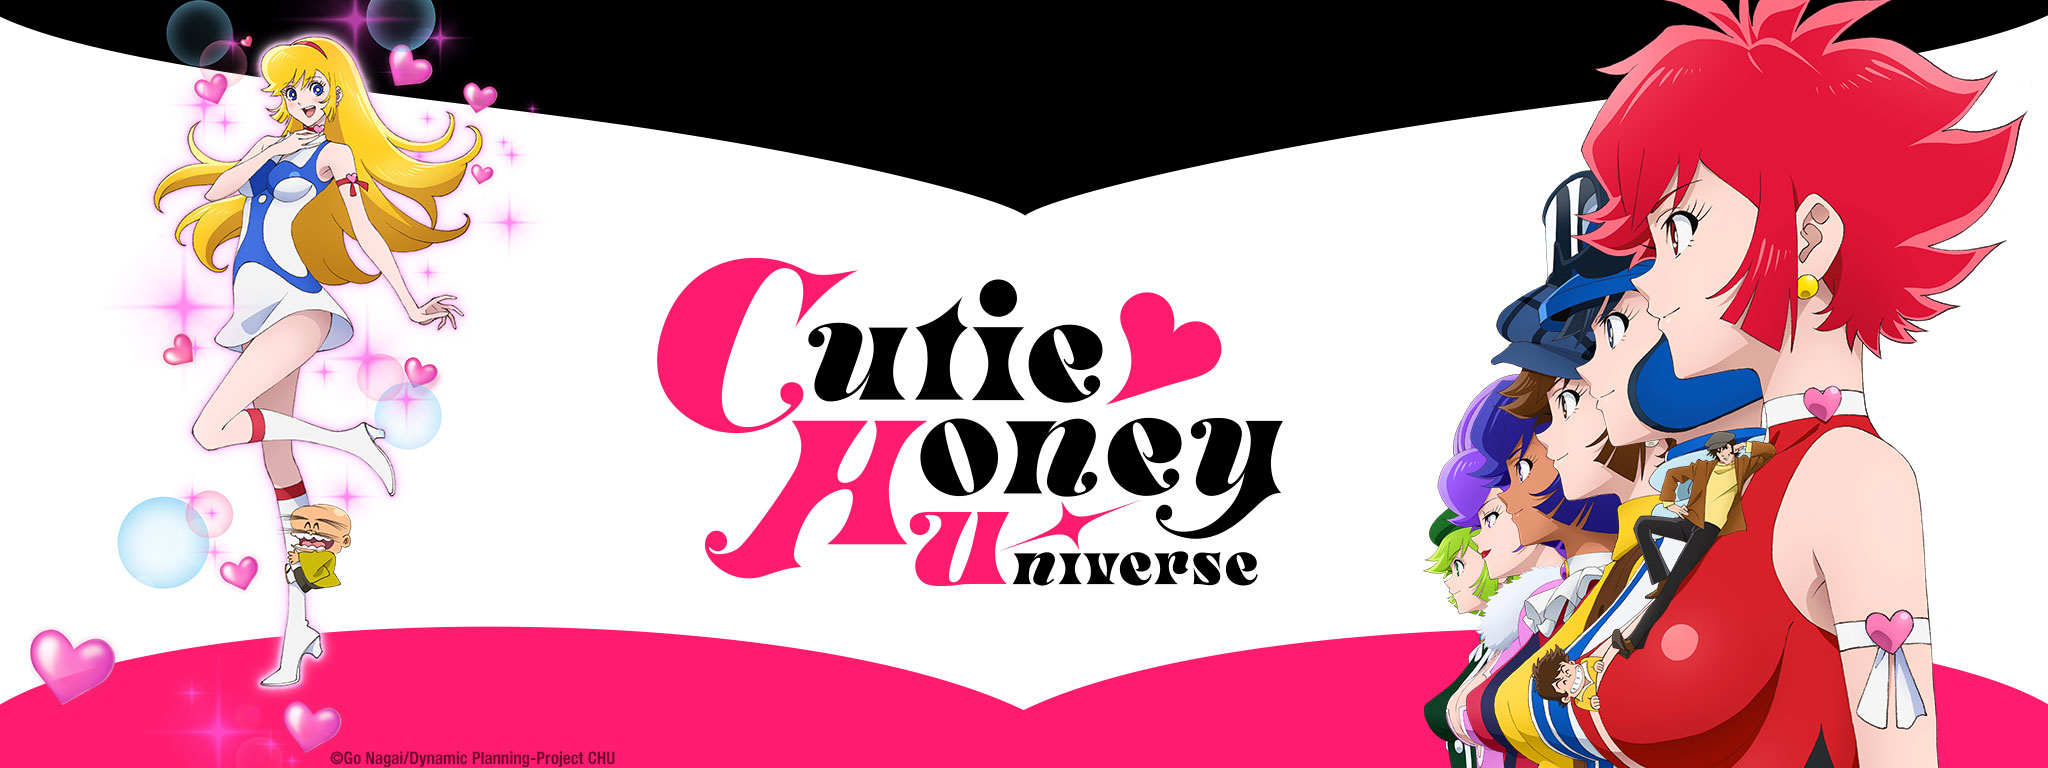 Title Art for Cutie Honey Universe